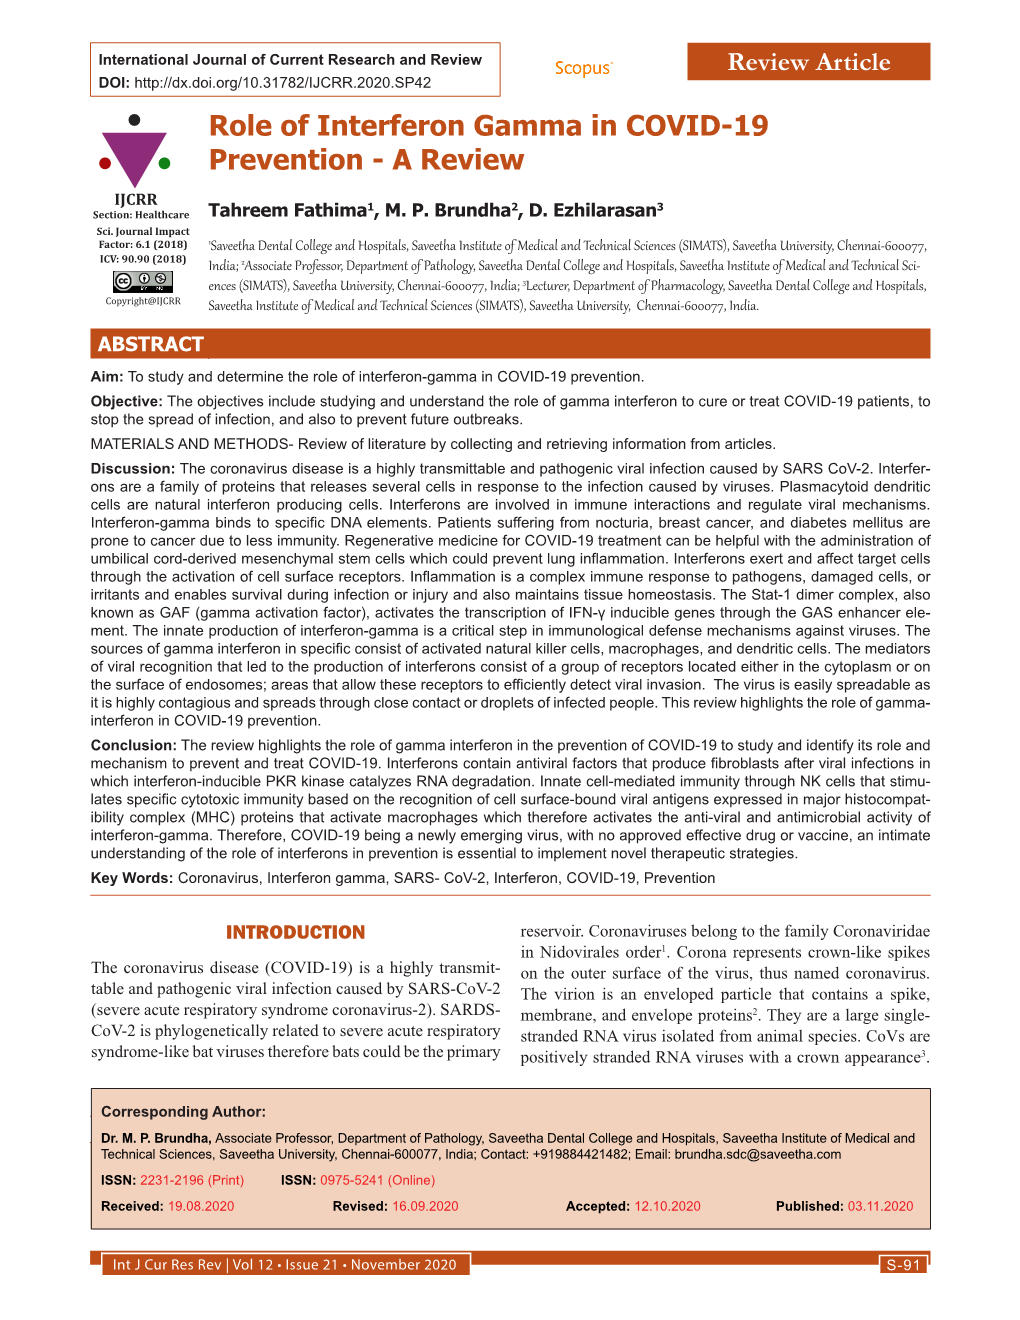 Role of Interferon Gamma in COVID-19 Prevention - a Review